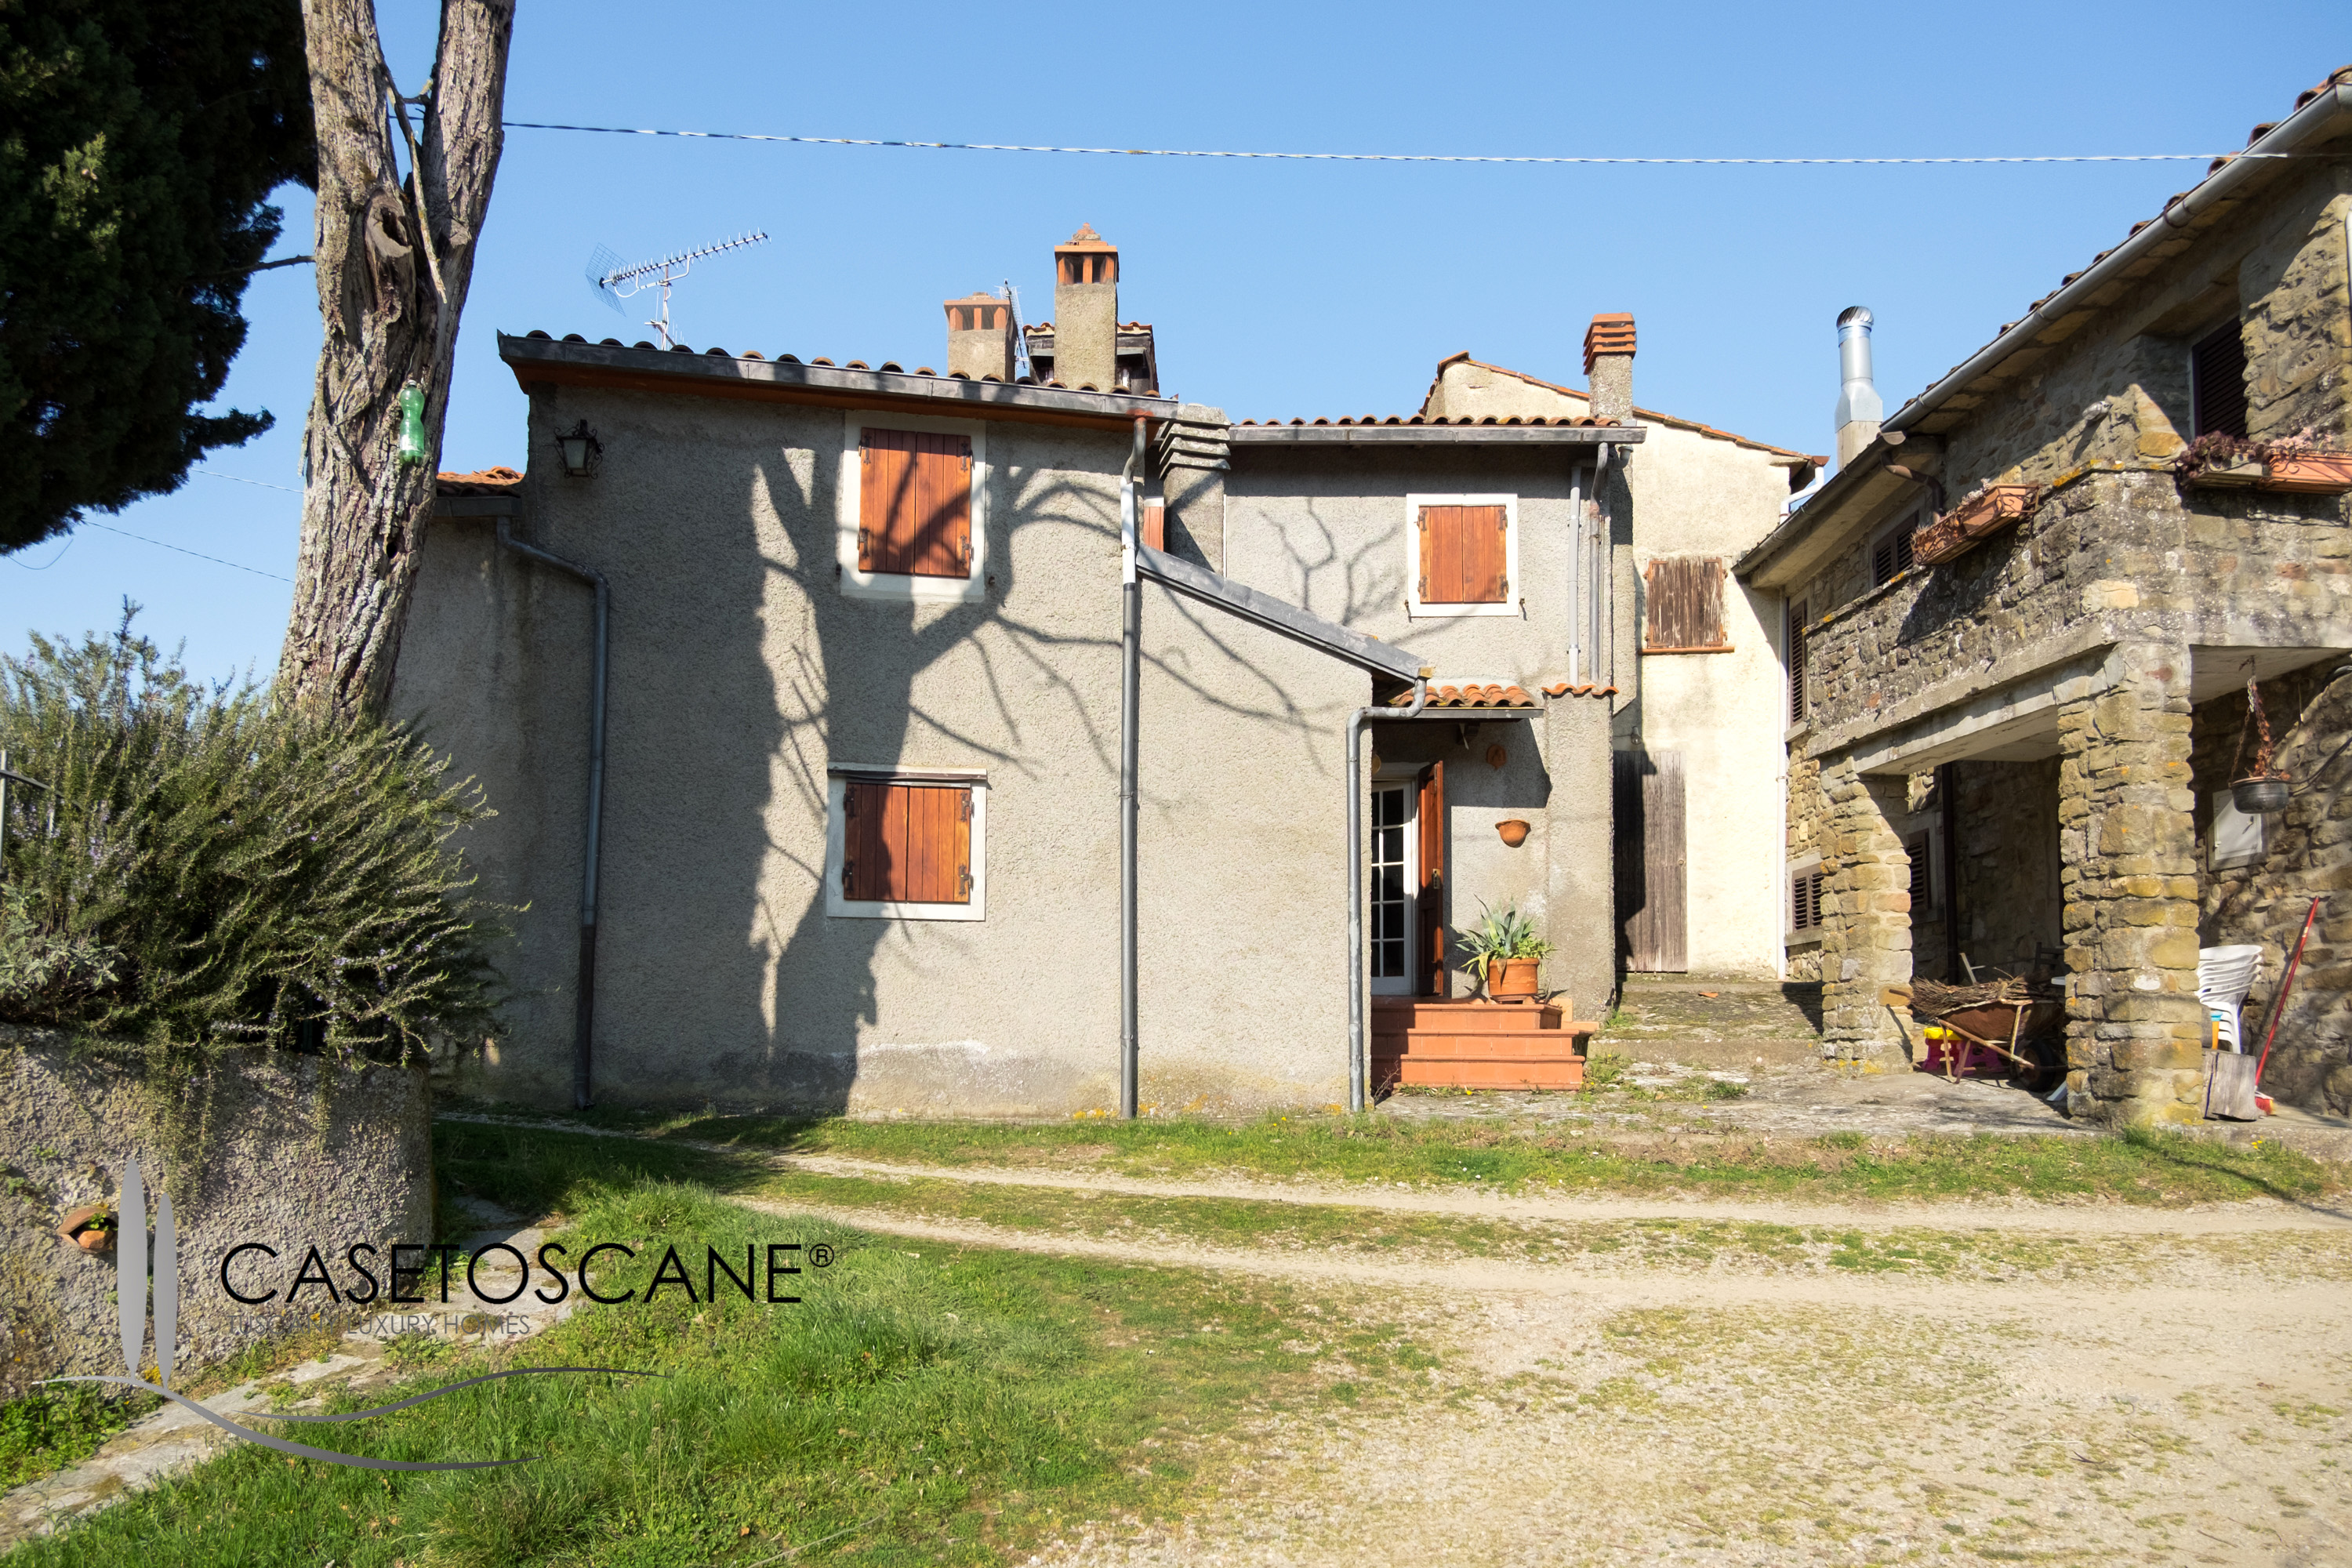 T134 - Antico terratetto in buone condizioni di mq.120 con giardino privato in piccolo borgo del 1400 nelle colline di Arezzo.